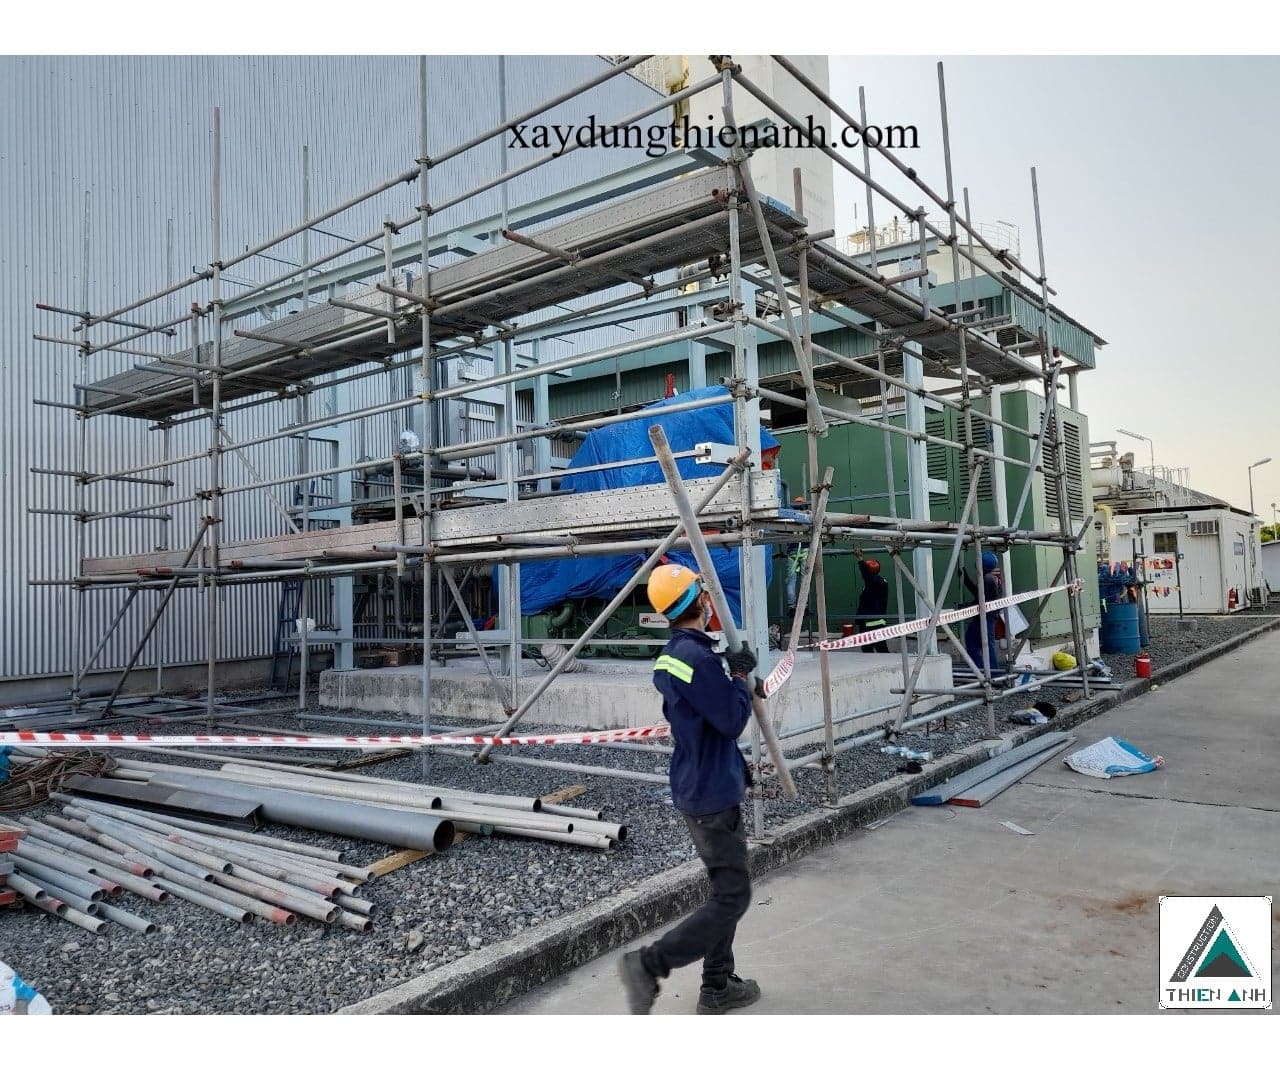 Công Ty TNHH Thiết Kế Kiến Trúc Xây Dựng Thiên Anh - Dịch vụ xây nhà trọn gói tại Bà Rịa Vũng Tàu uy tín